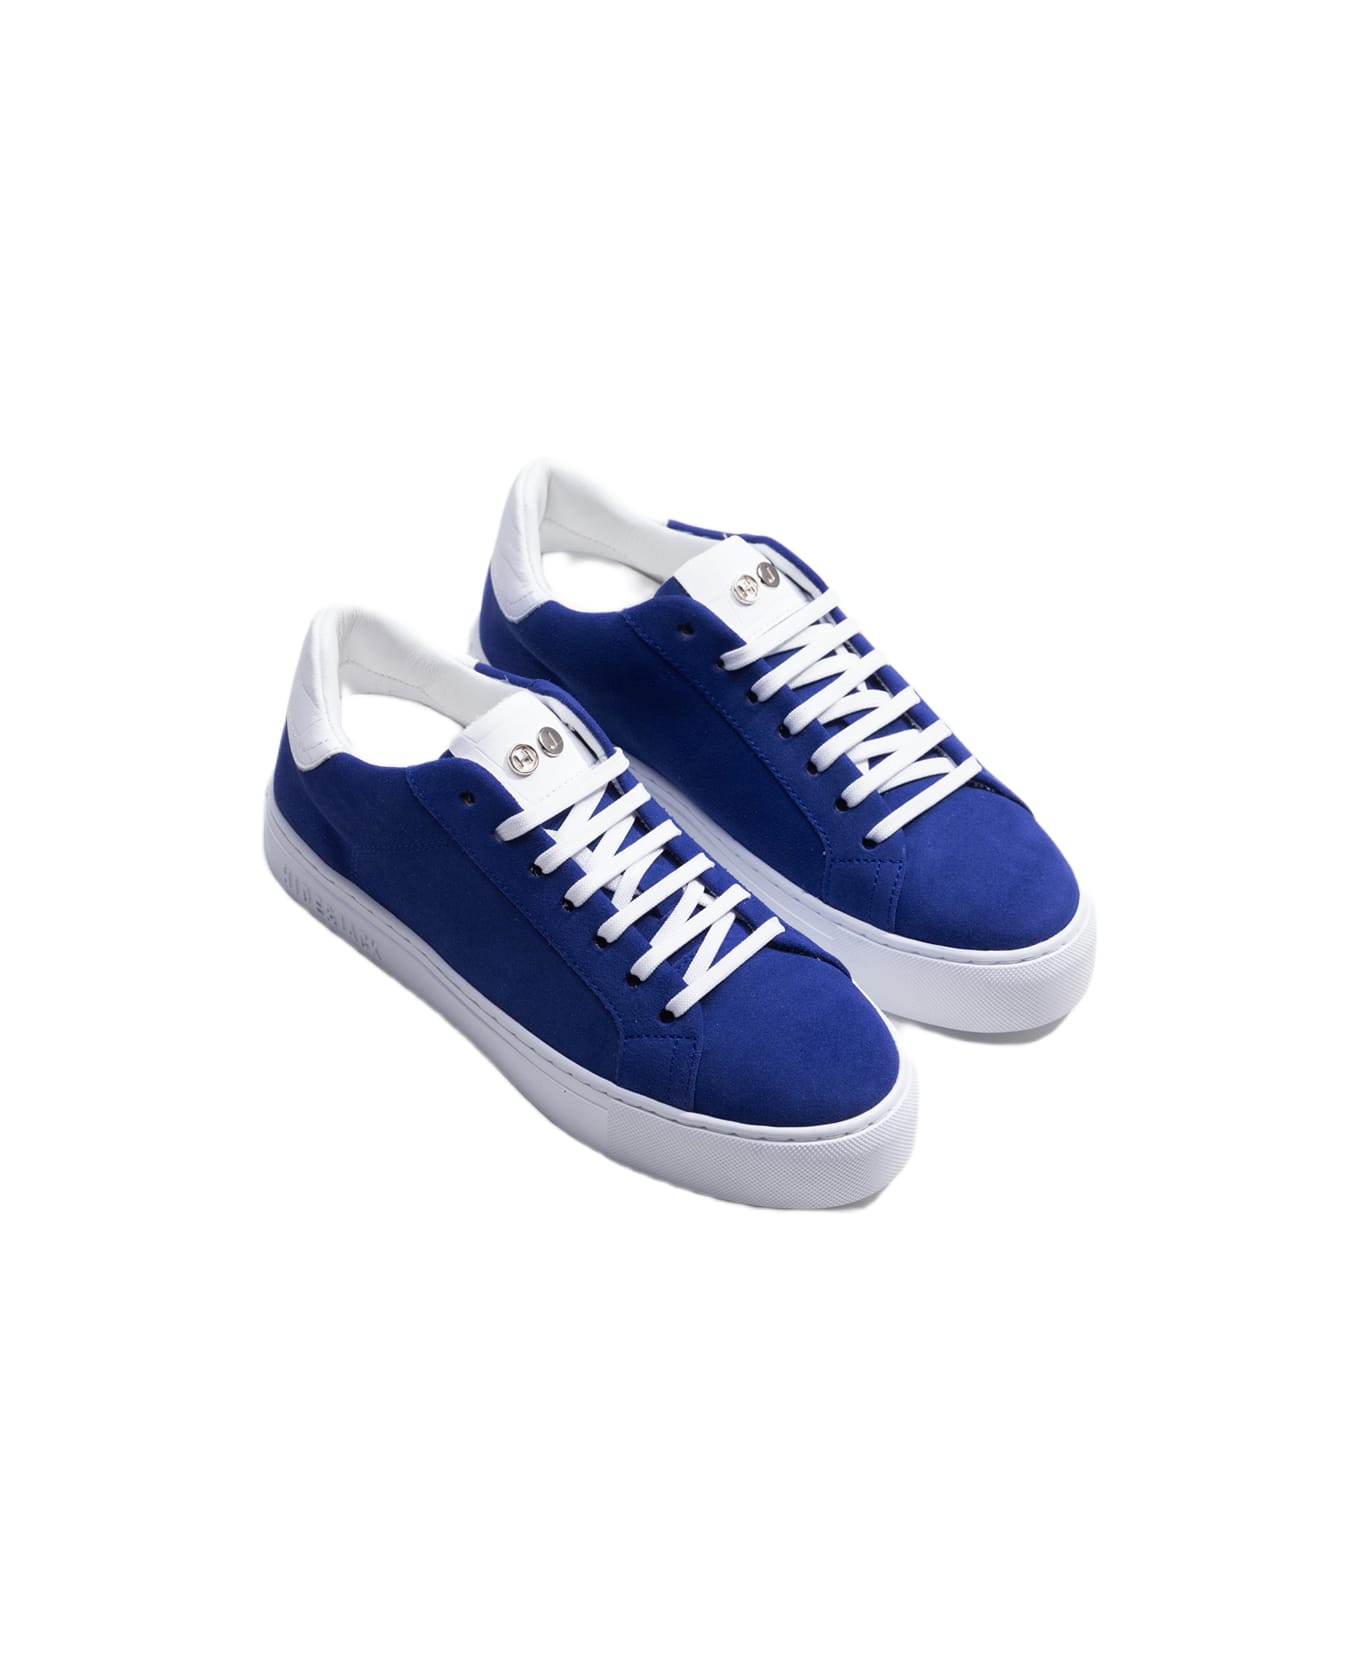 Hide&Jack Low Top Sneaker - Essence Oil Azure White